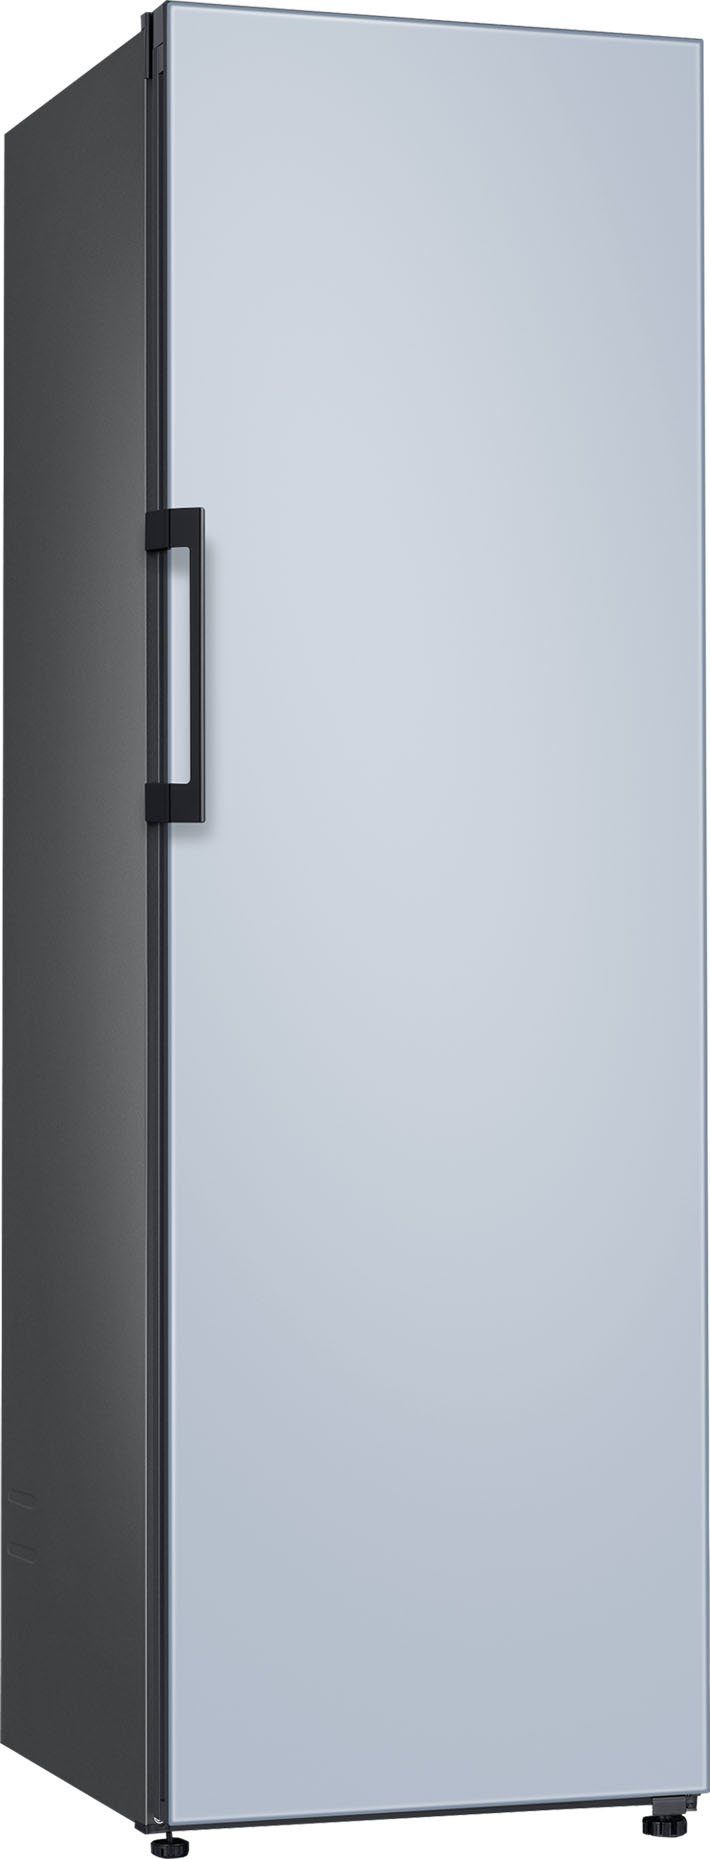 Samsung Kühlschrank Bespoke RR39A746348, 185,3 cm hoch, 59,5 cm breit  online kaufen | OTTO